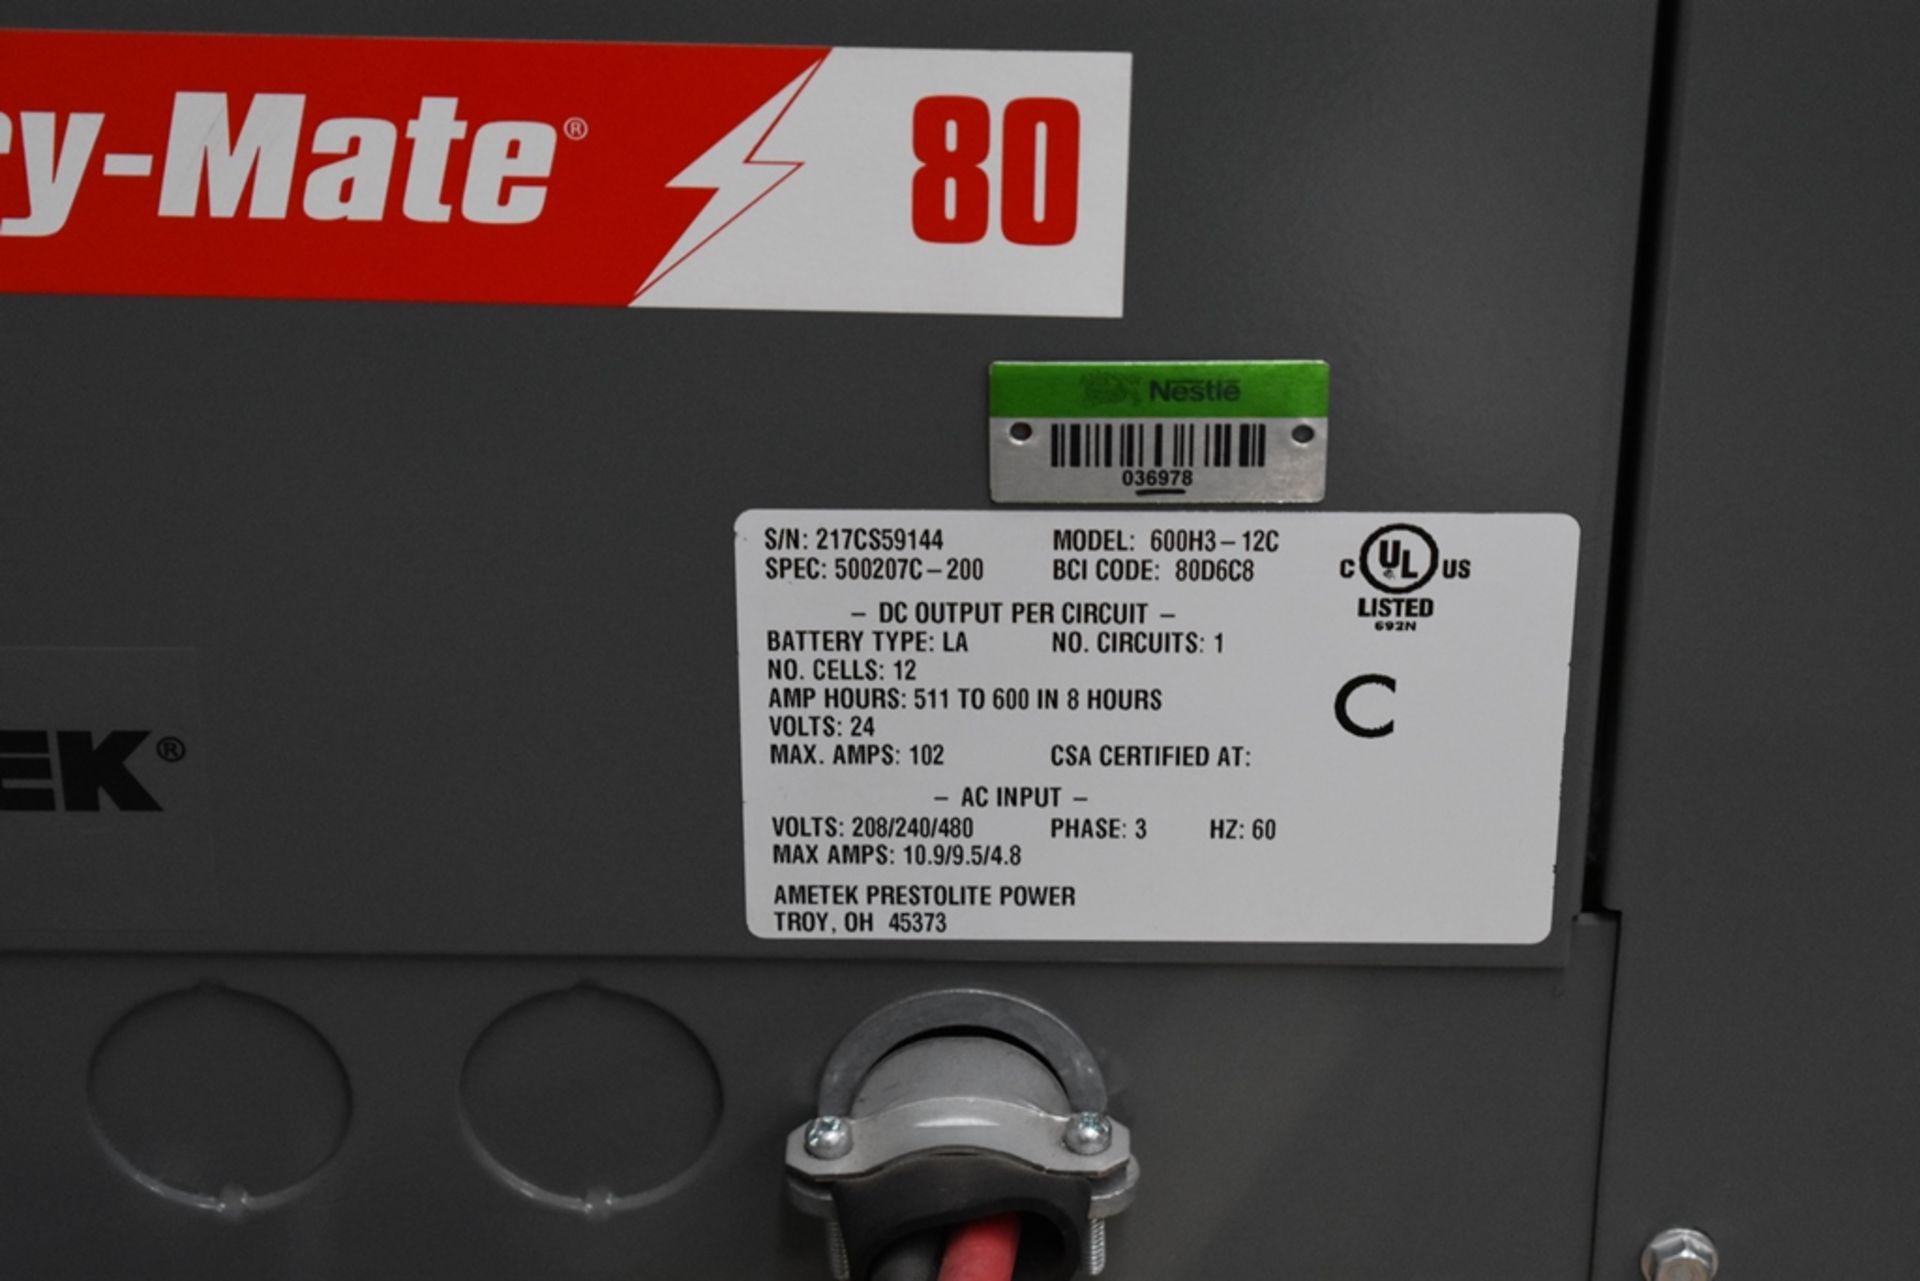 Ametek Prestolite Power Forklift Battery Charger, Model Mate-80 and Battery Brand Deka for 24 volts - Image 10 of 22